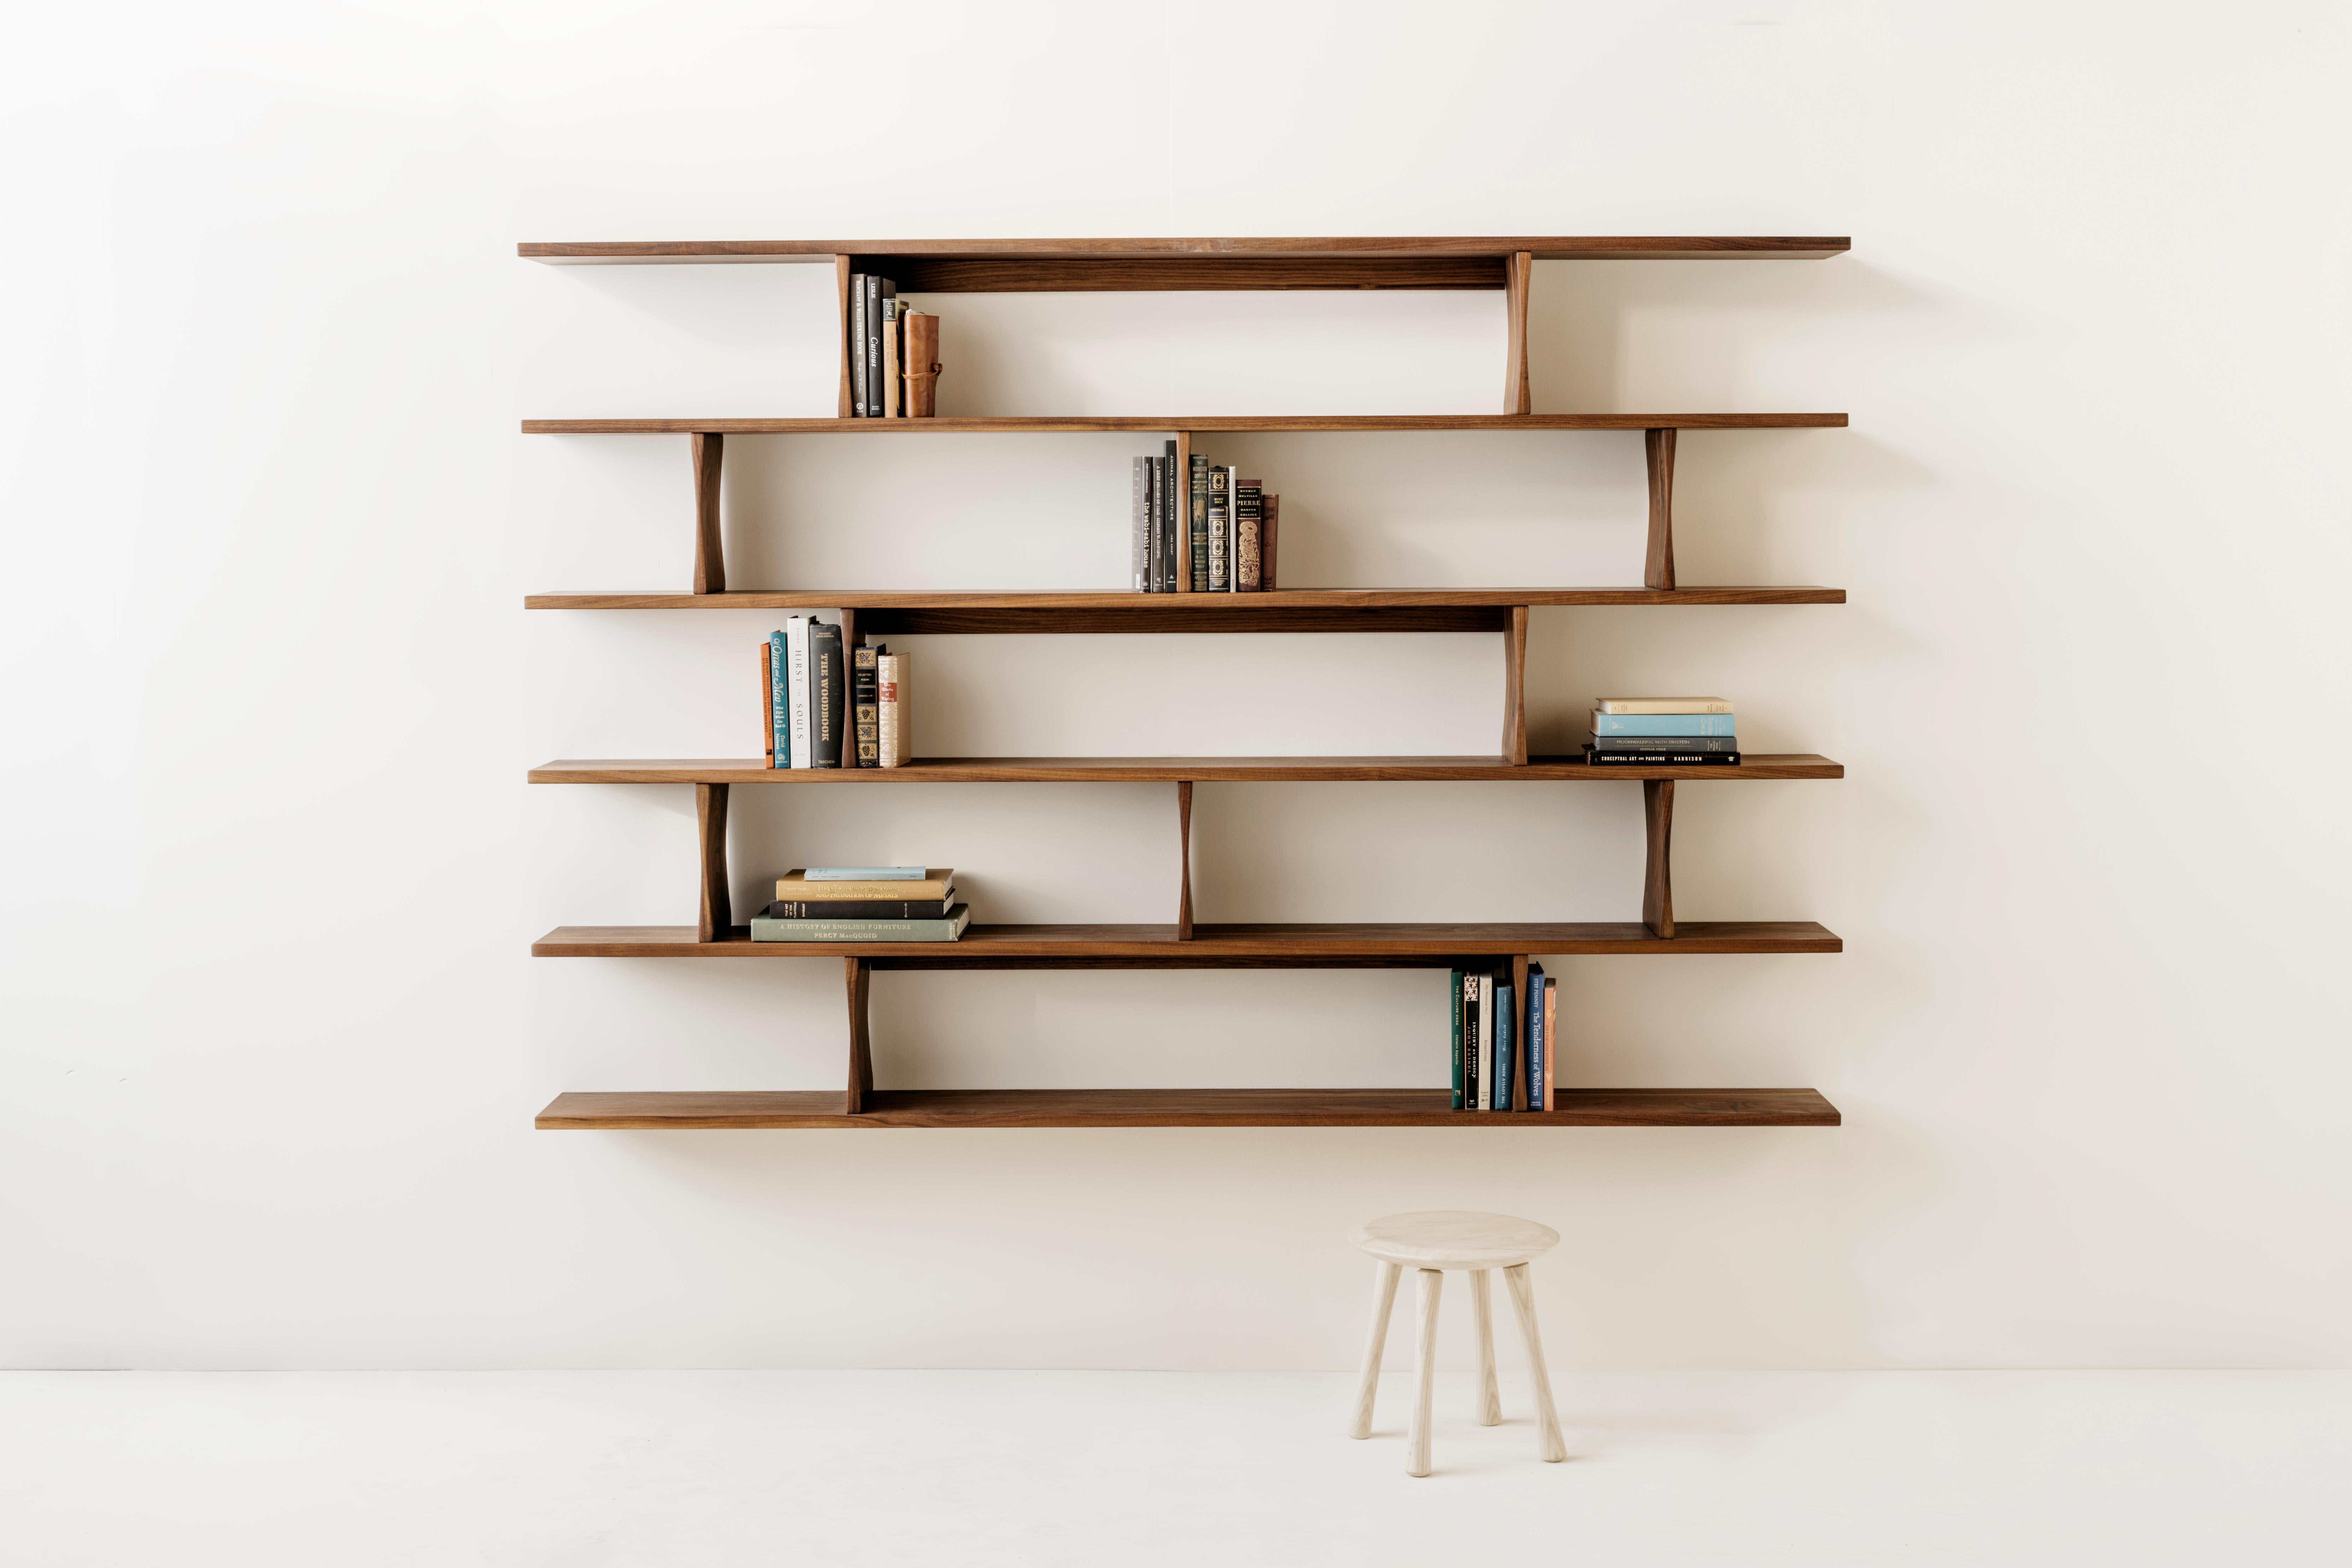 Die wandmontierten Bücherregale von Richard Watson sind so konzipiert, dass sie an der Wand zu schweben scheinen. Sie werden mit einem minimalen Stollensystem montiert, das alle Befestigungselemente verdeckt, so dass die Form der Regale nicht